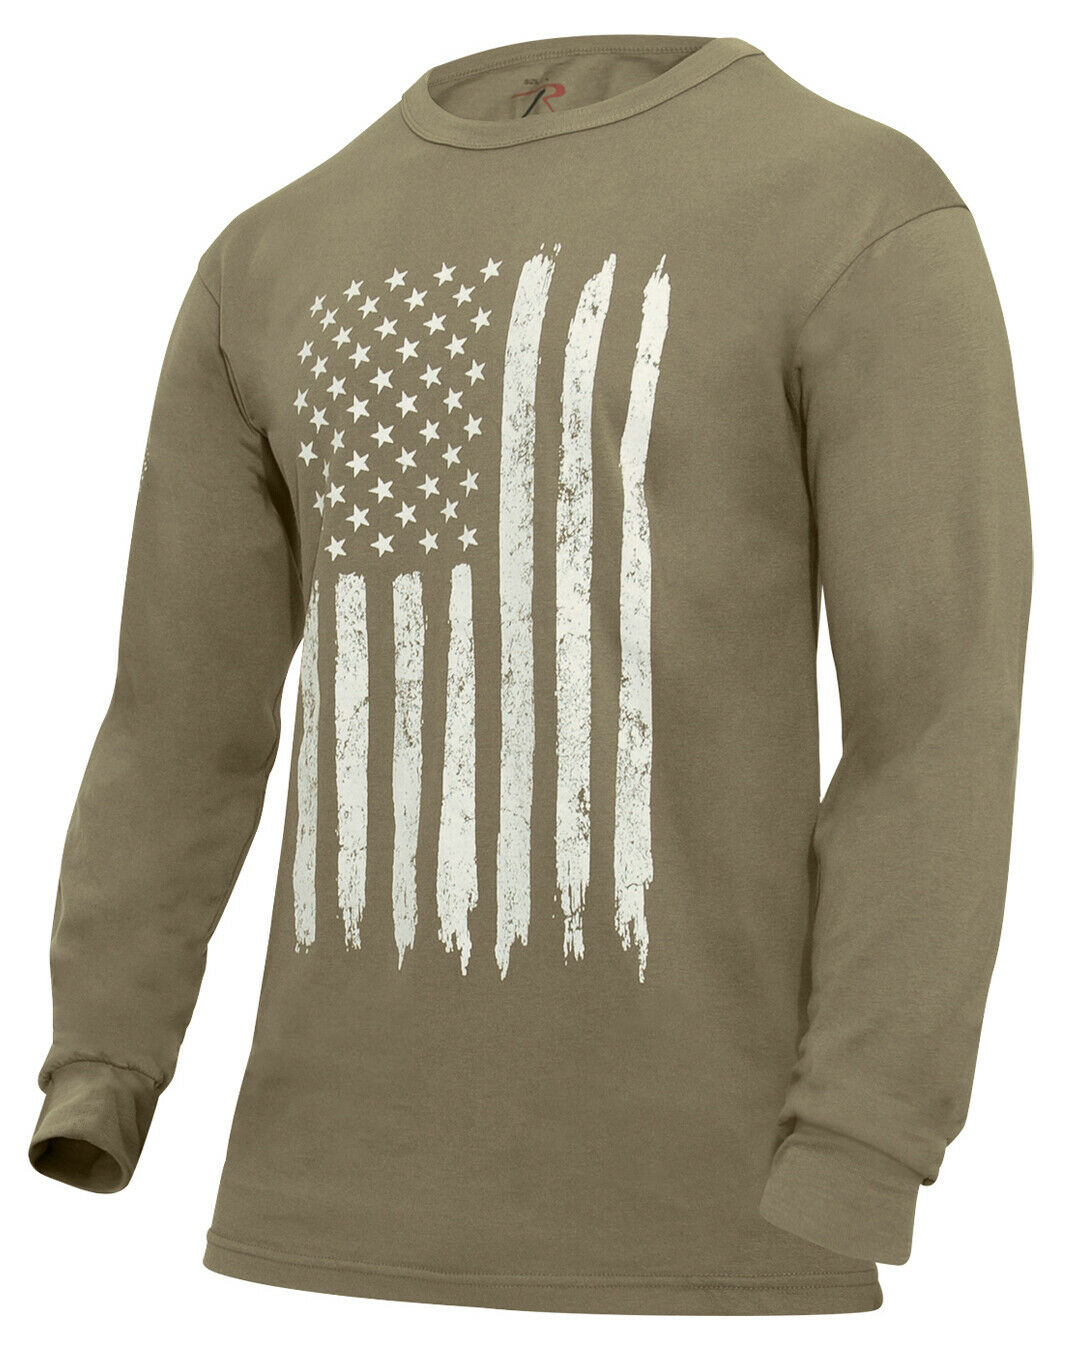 Rothco US Flag Long Sleeve T-Shirt - Coyote Brown